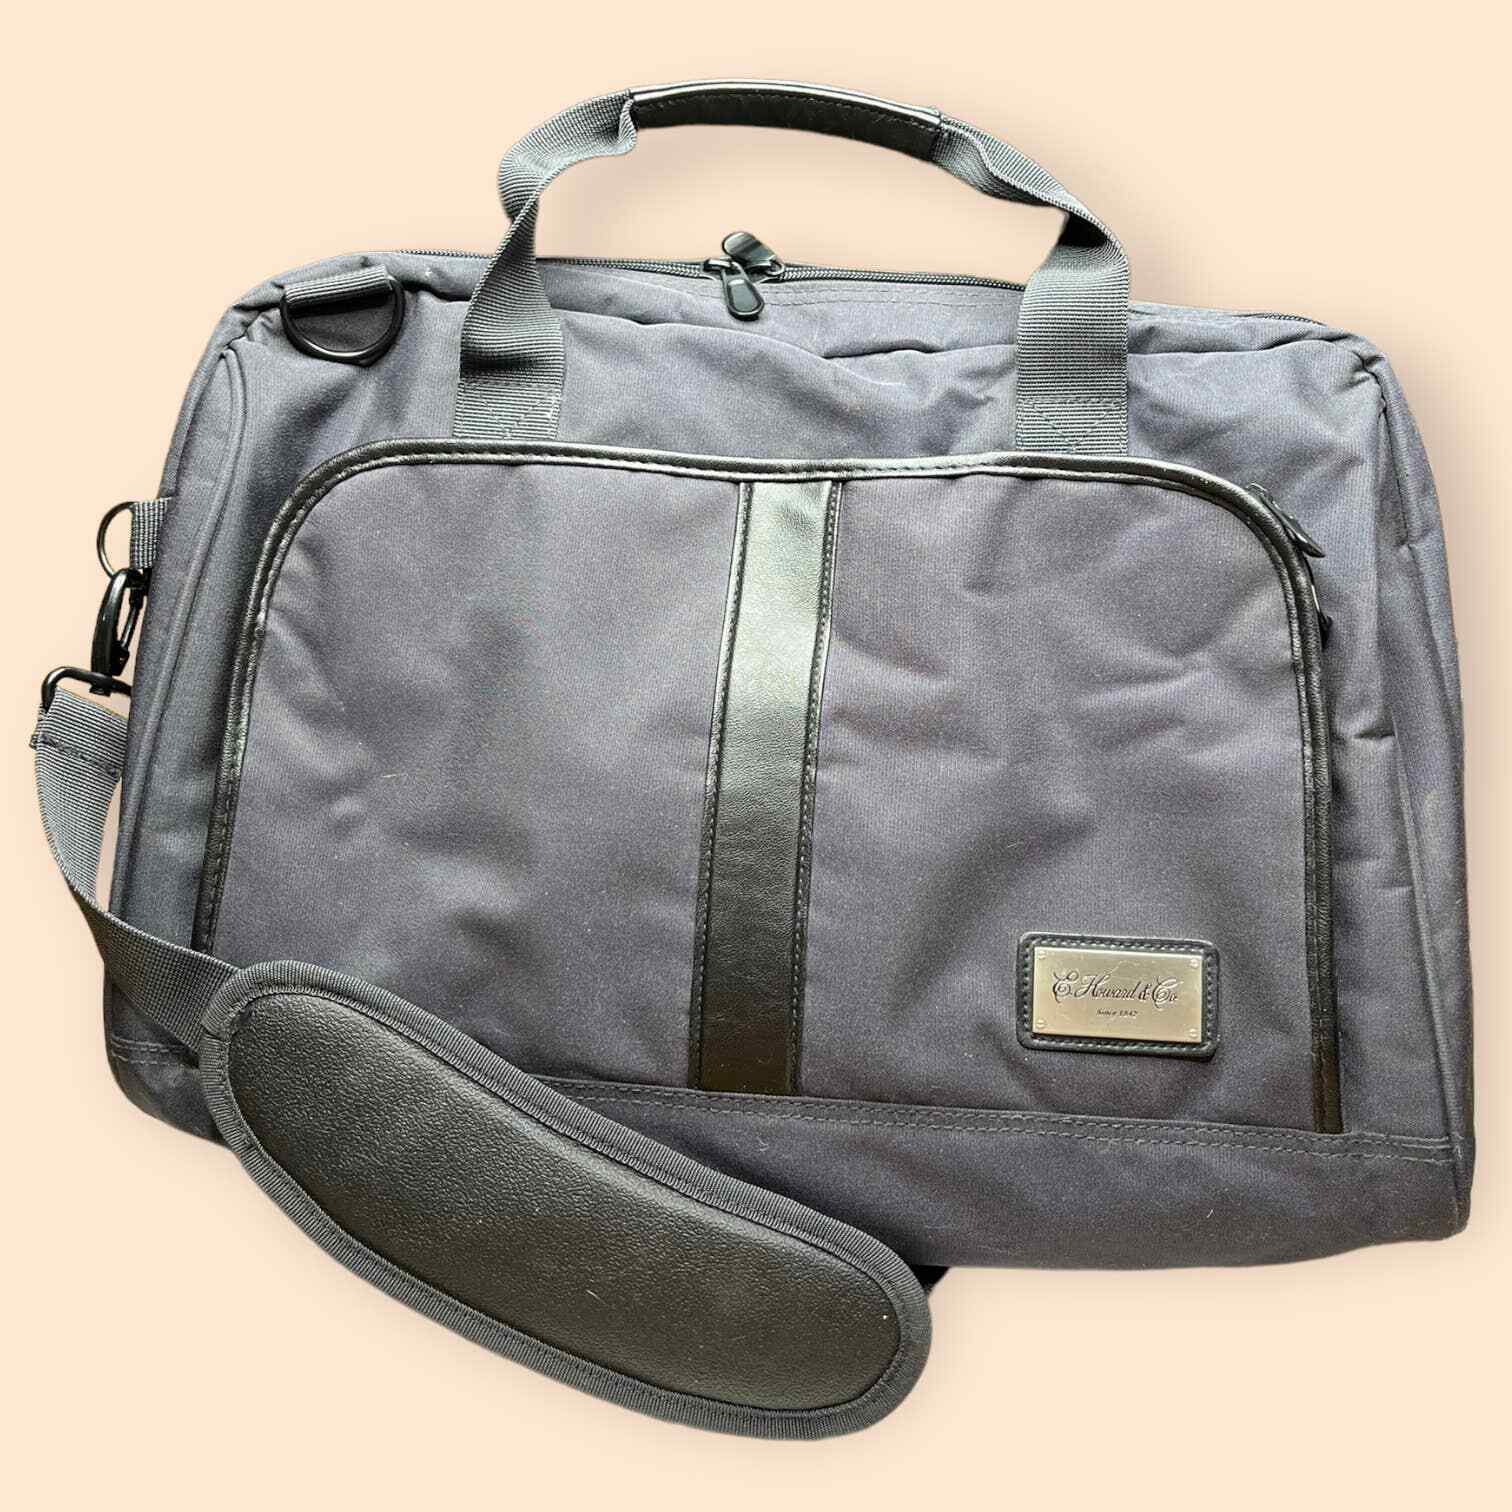 E. Howard & Co Travel Bag